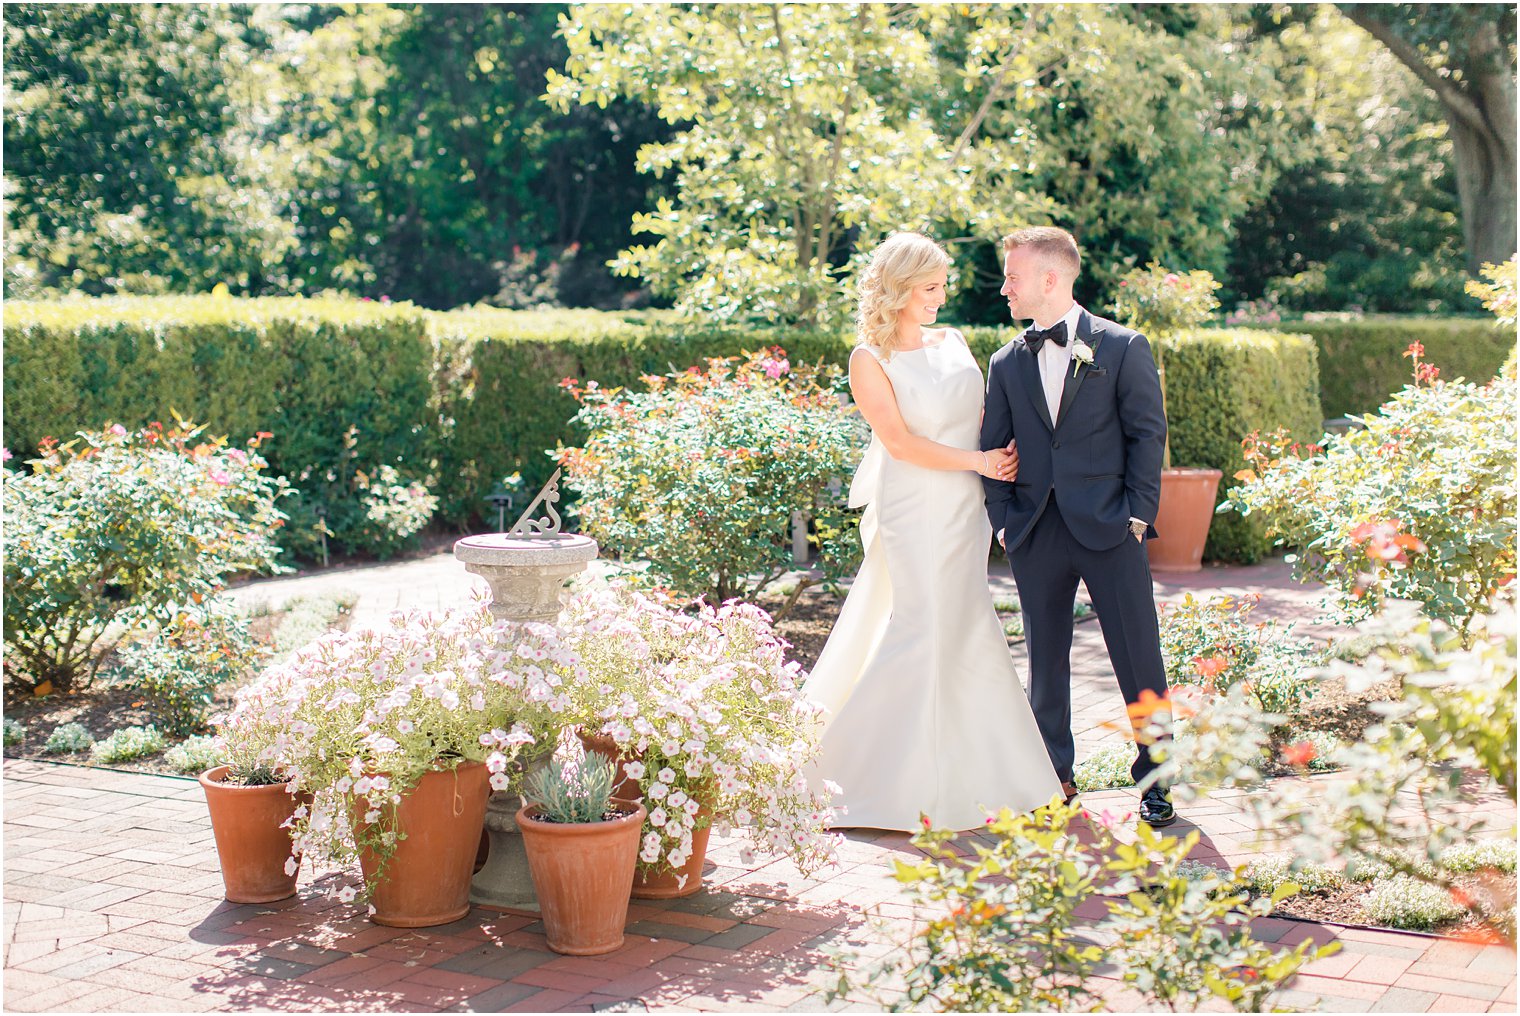 sweet bride and groom photo at Frelinghuysen Arboretum in Morristown, NJ